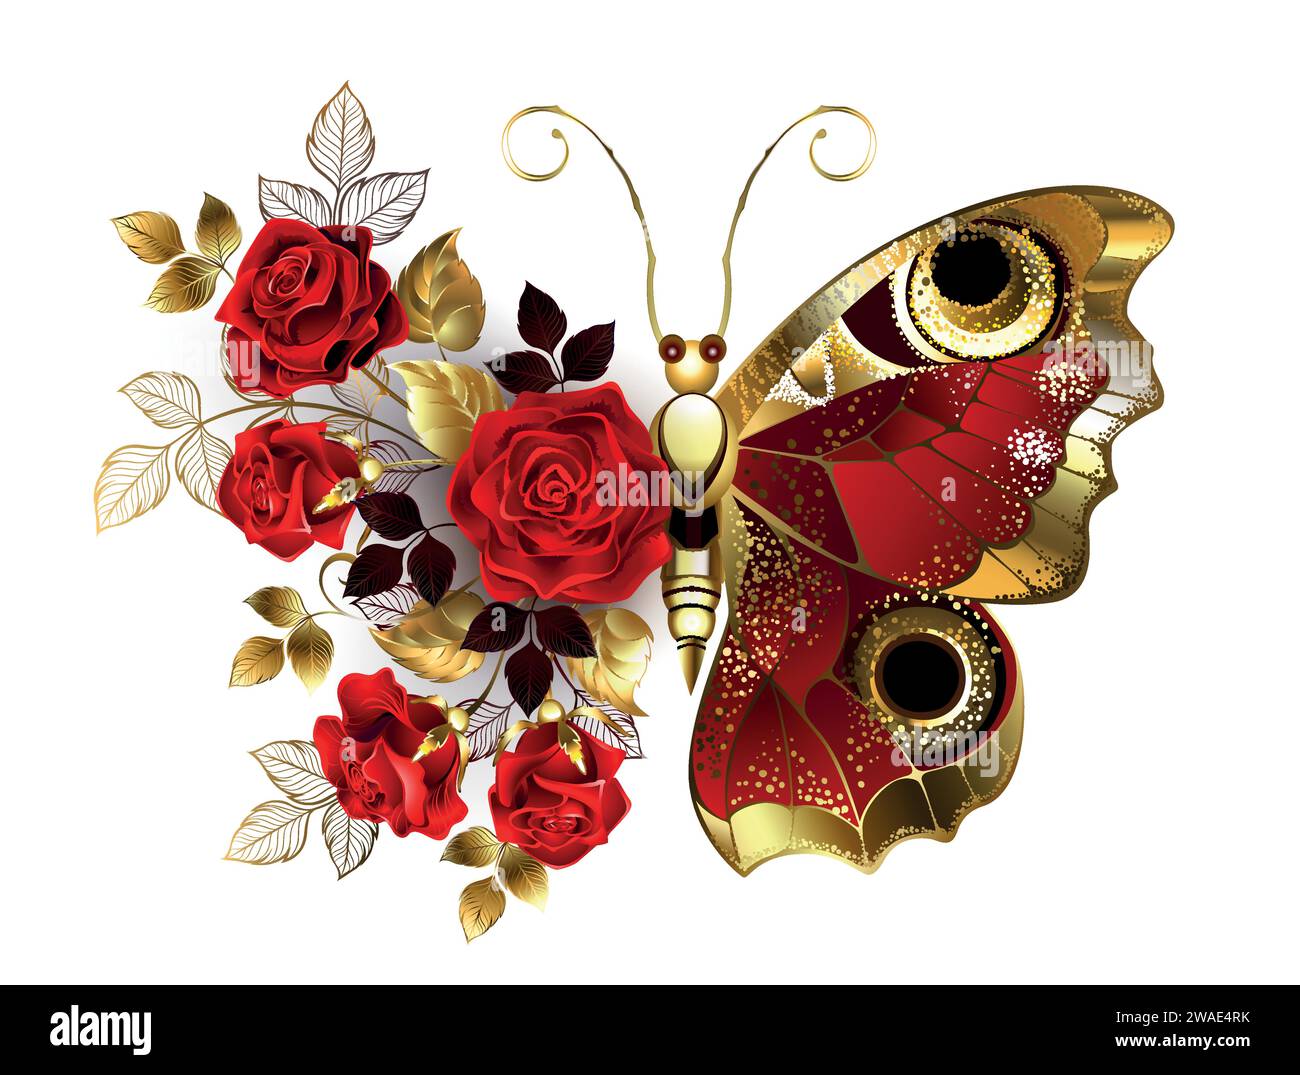 Farfalla di fiori con occhi di pavone rosso con ala ruvida rossa, decorata con una composizione di rose rosse dipinte artisticamente con steli e foglie dorate Illustrazione Vettoriale